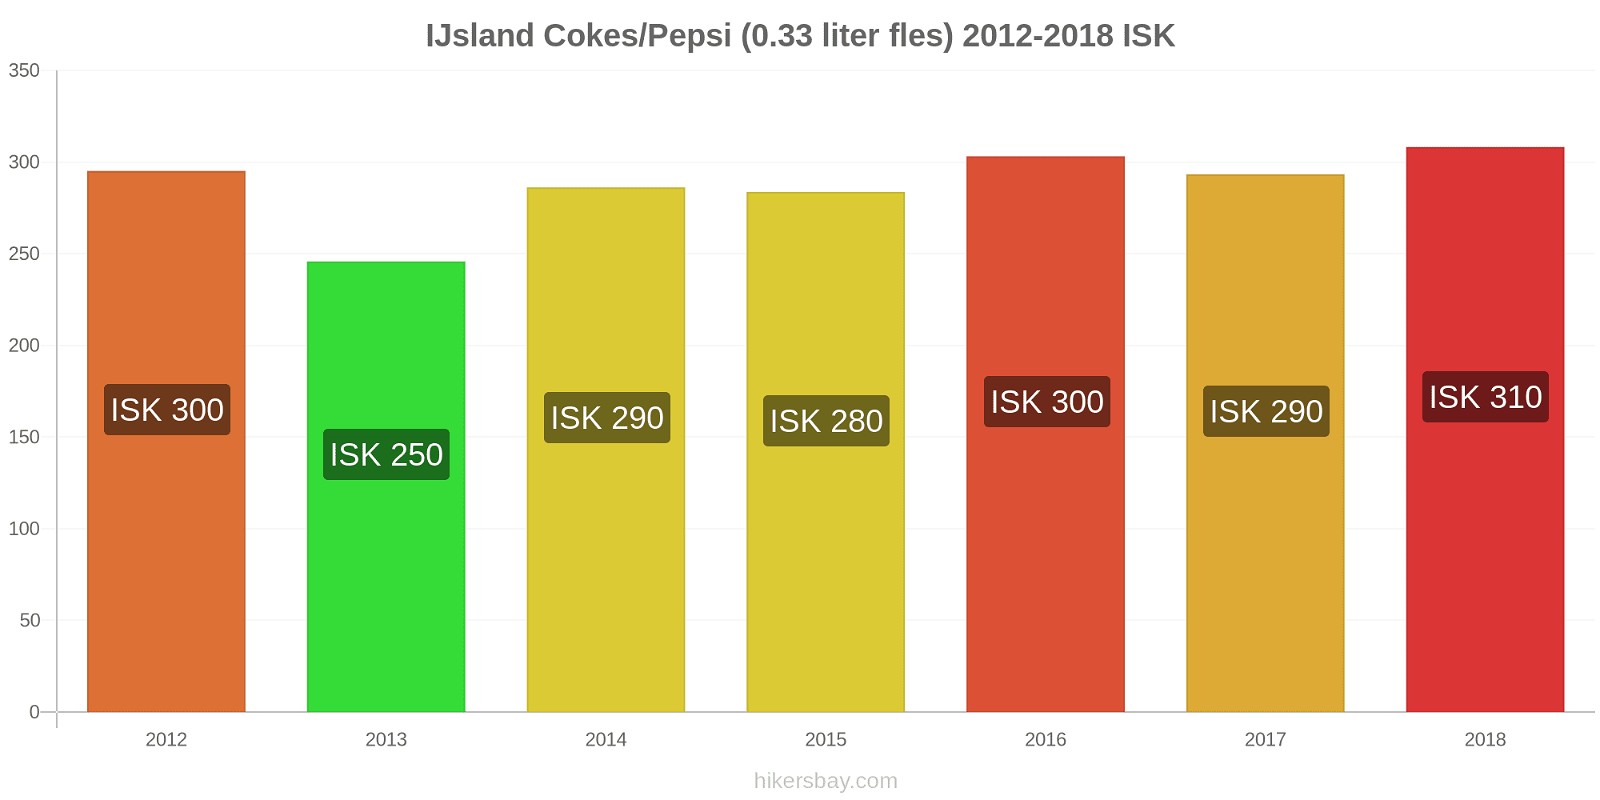 IJsland prijswijzigingen Cokes/Pepsi (0,33 literfles) hikersbay.com